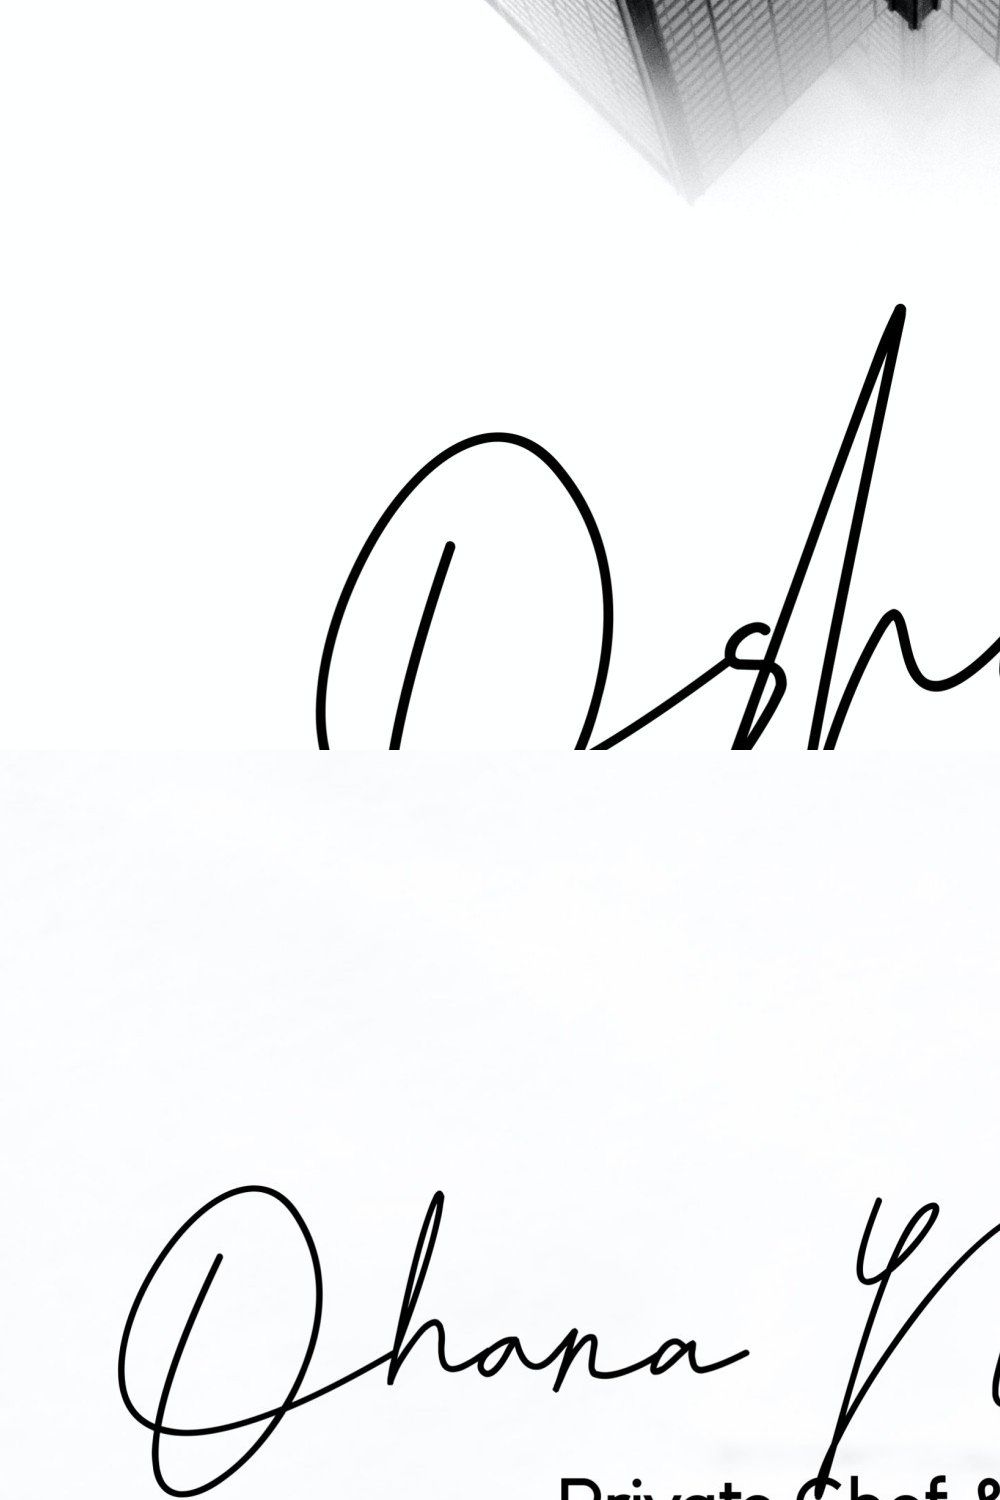 Oshawa - Signature Font pinterest preview image.